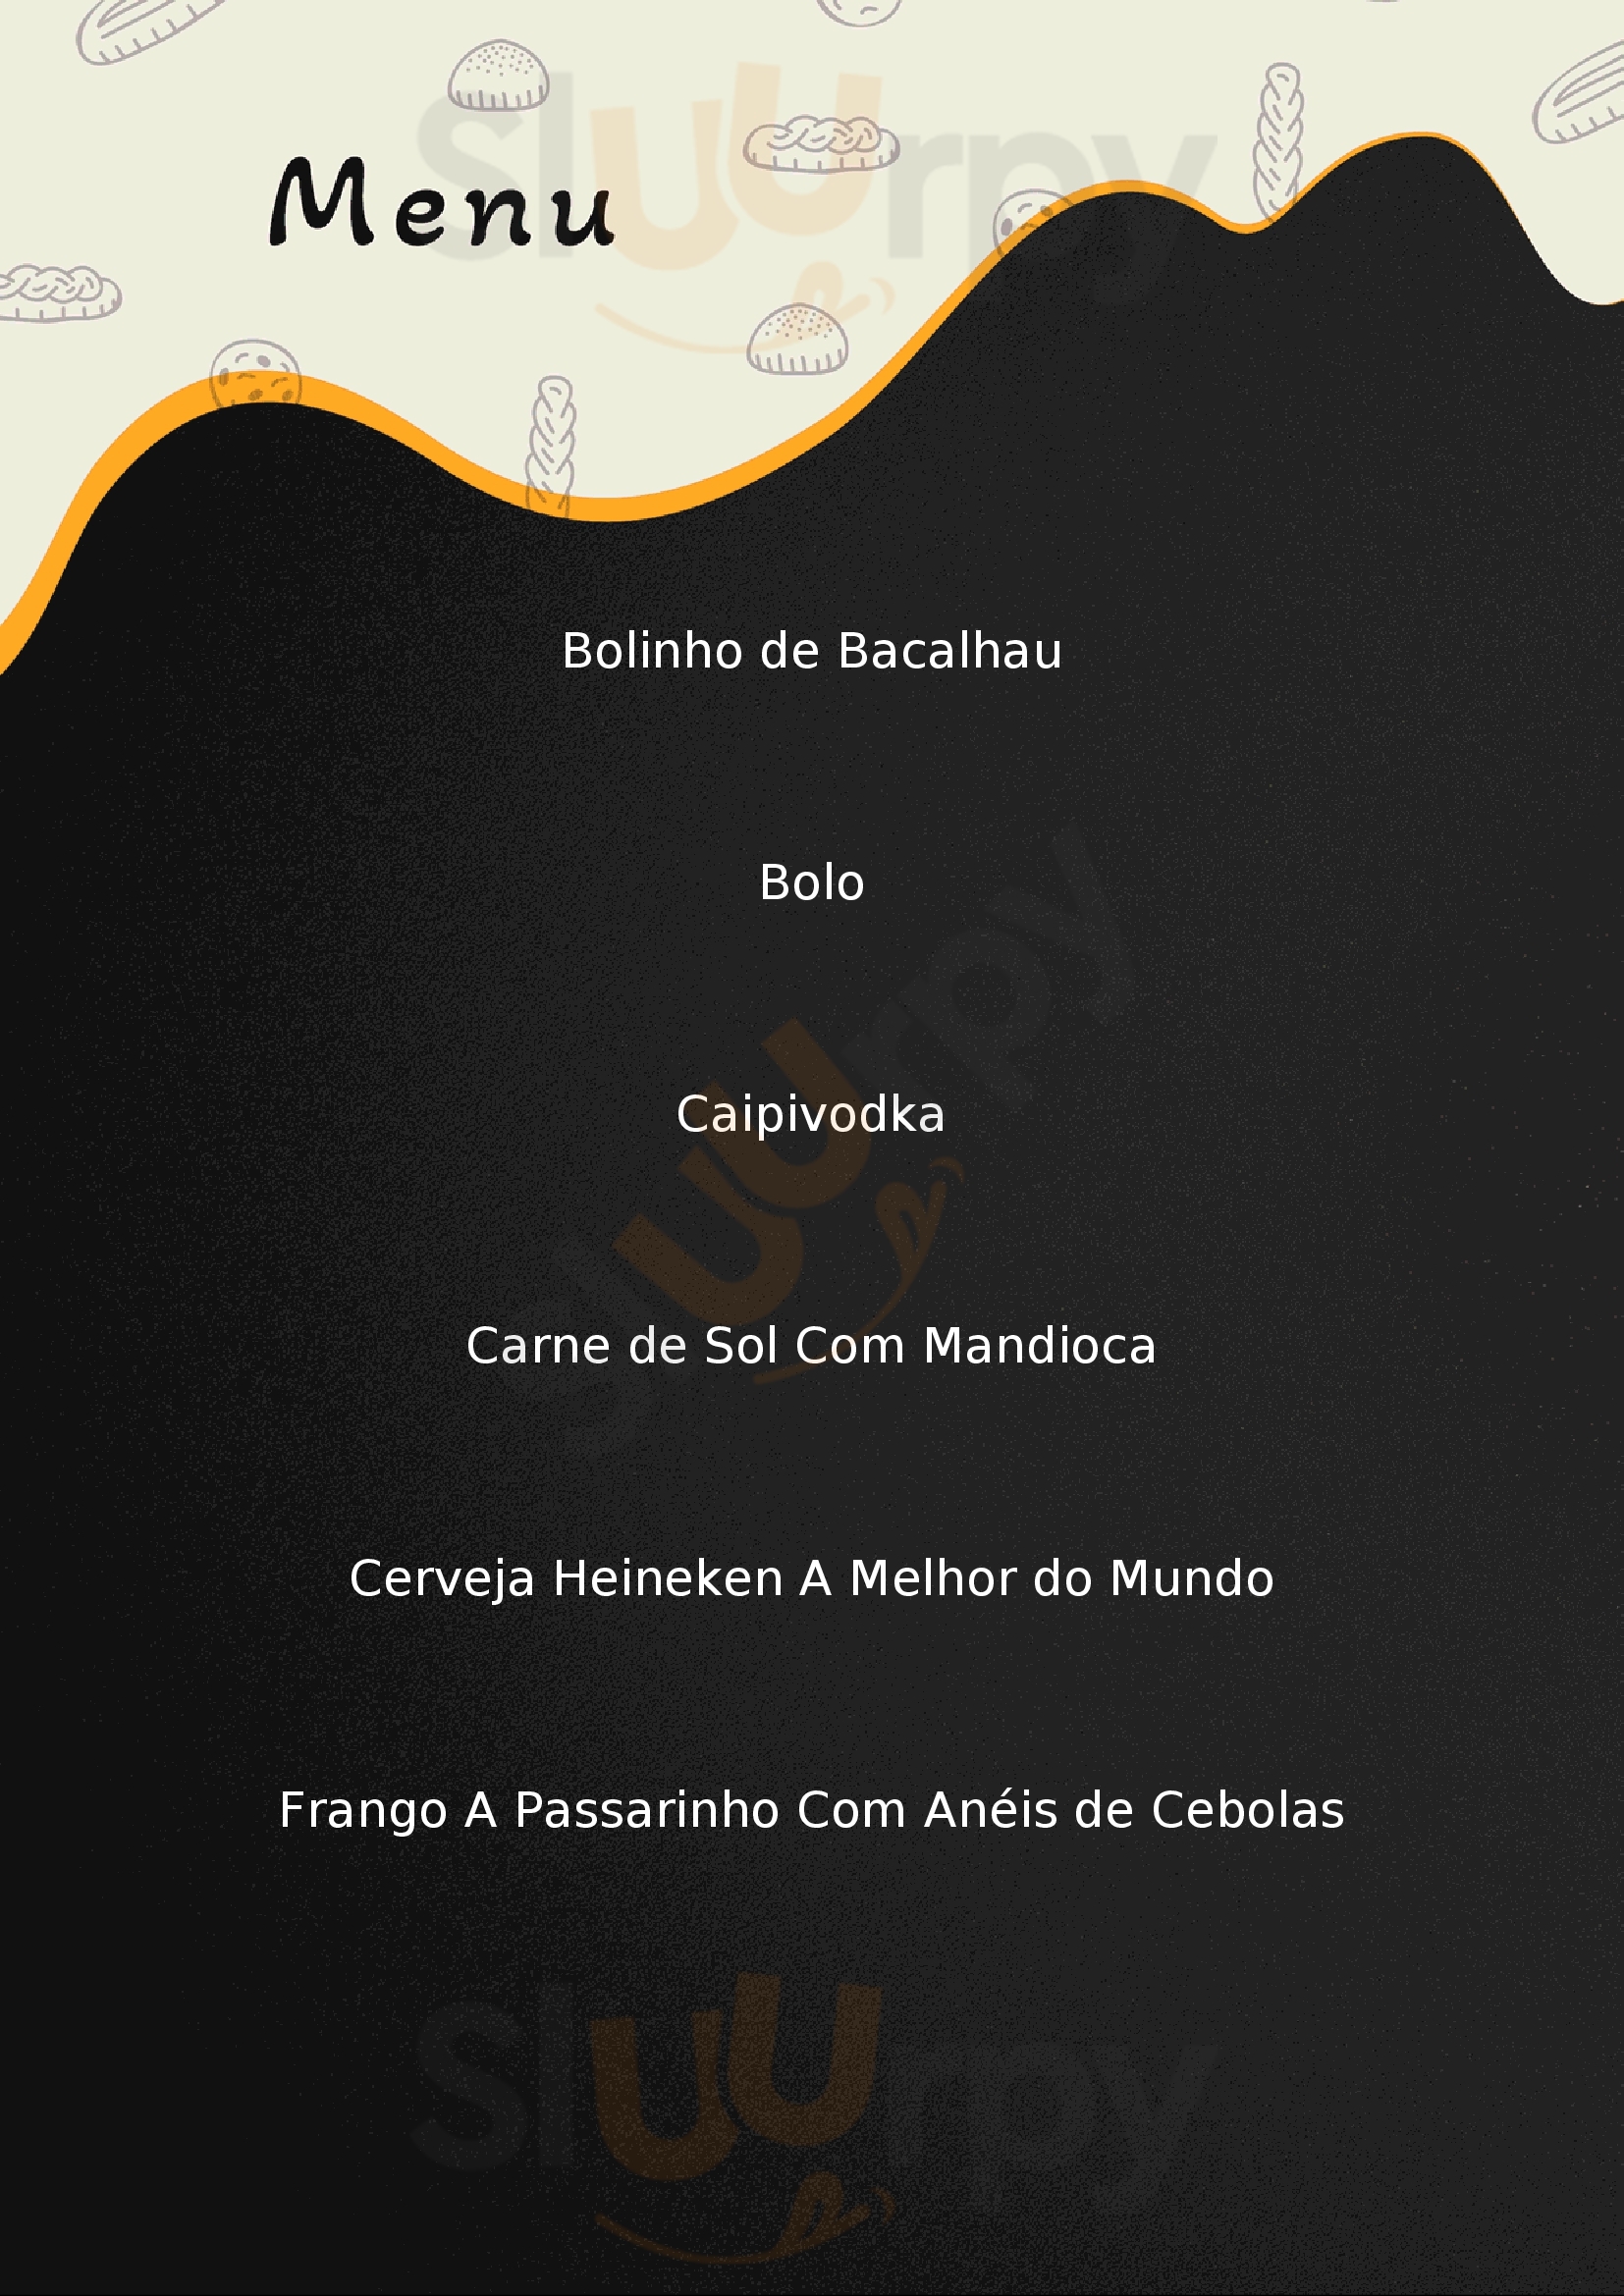 Casarão Bahiano 2 Belo Horizonte Menu - 1